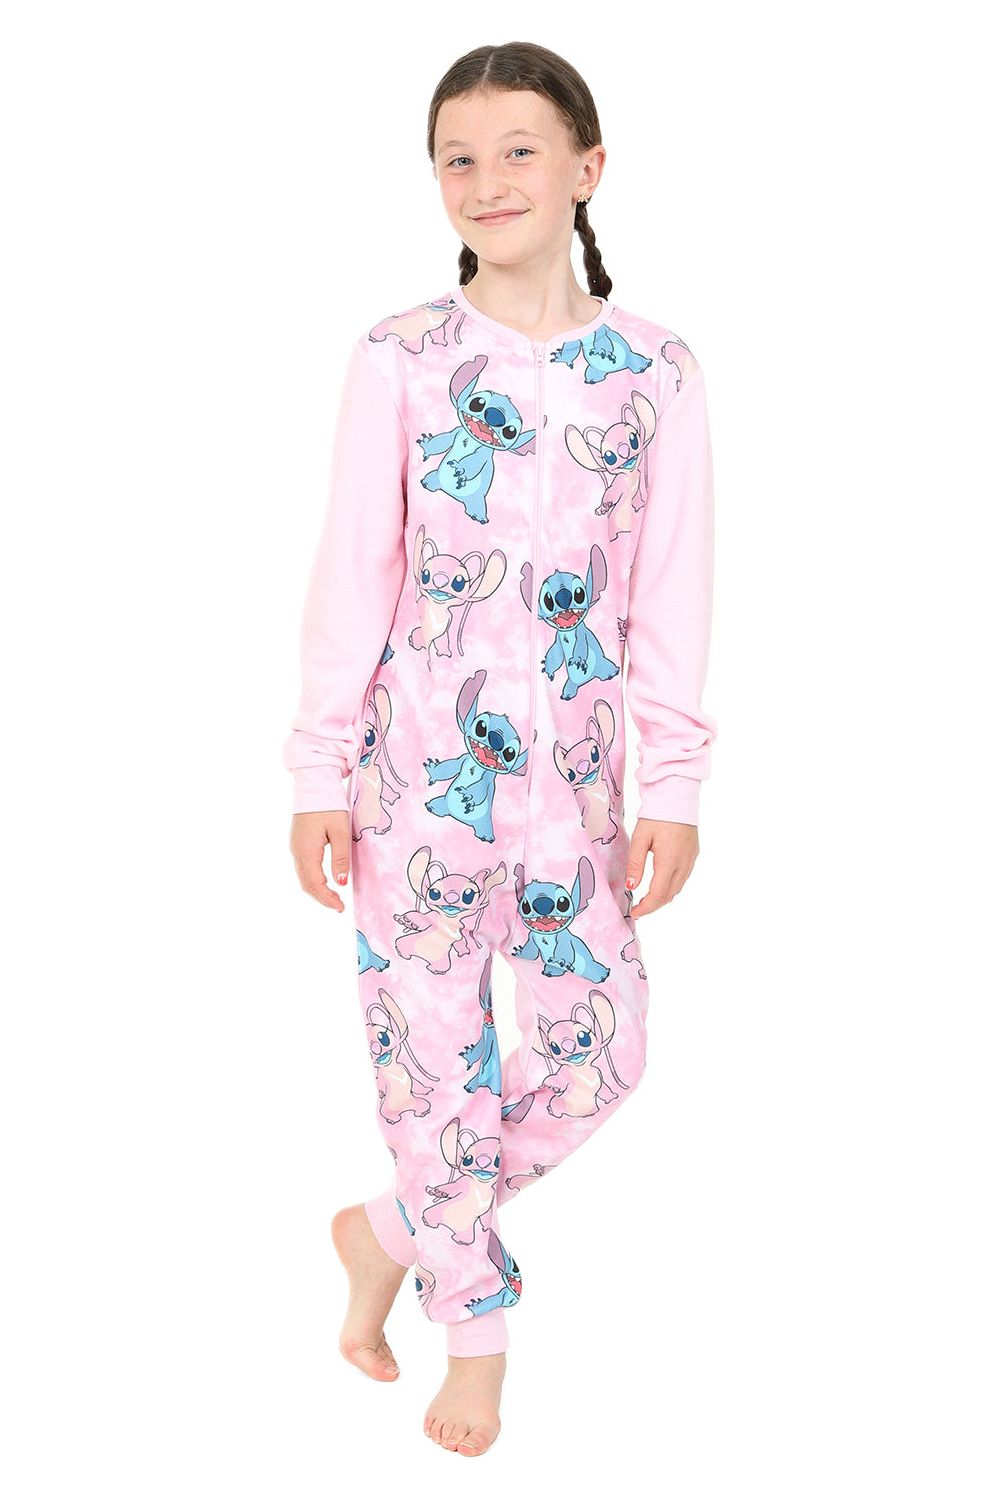 Disney Girls Lilo and Stitch Stitch & Angel Pink Fleece Sleepsuit Kids